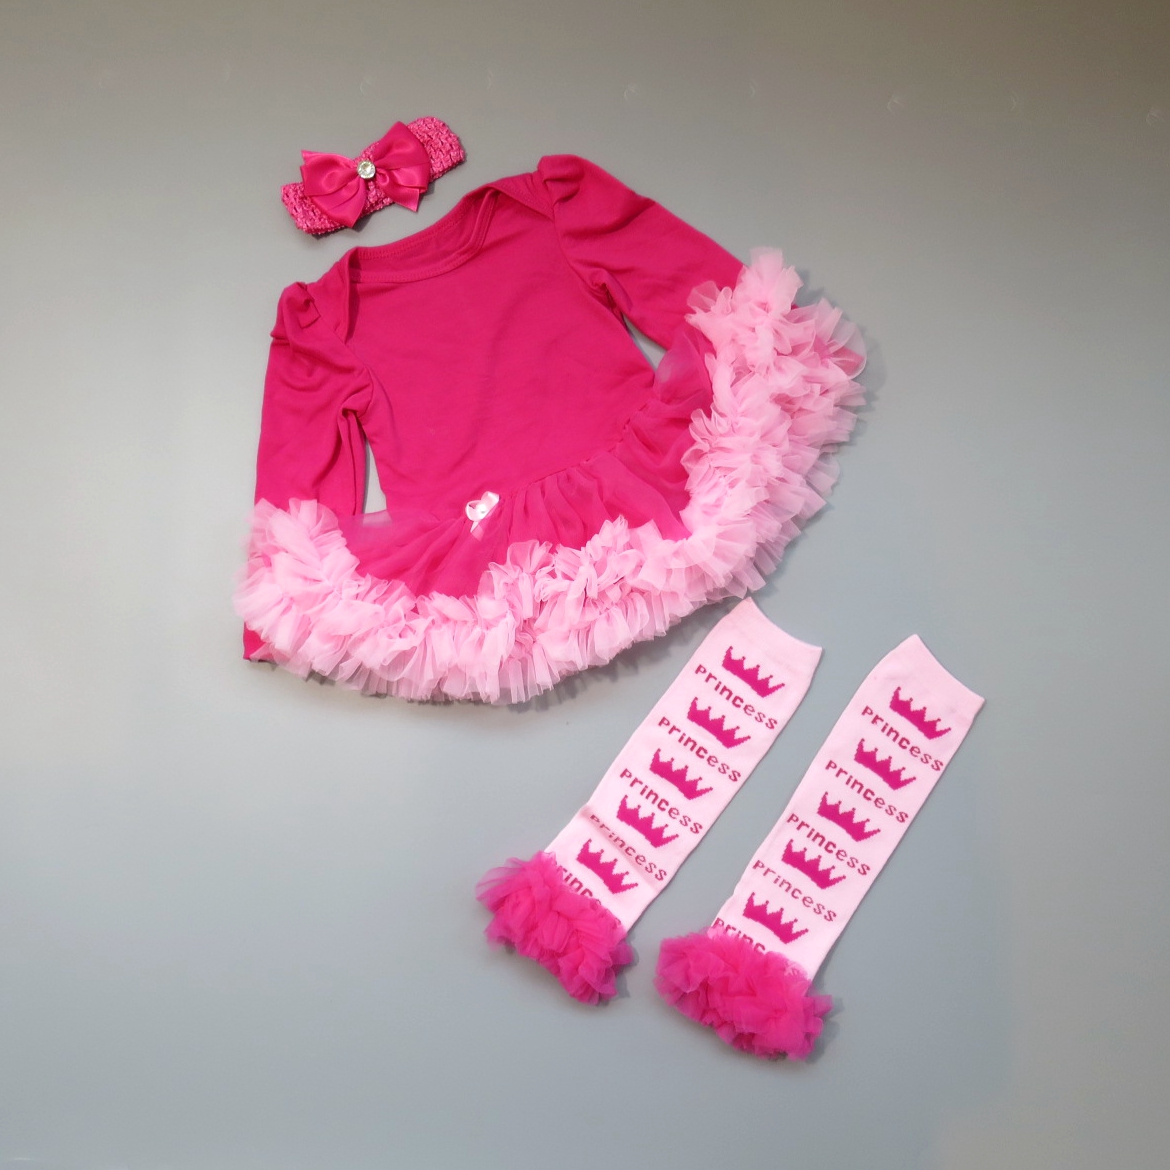 日安朵朵 女嬰精緻雪紡蓬蓬裙連身衣禮盒組 桃紅芭比 Barbie (網紗襪套 長袖蓬裙連身衣) (12-18個月)